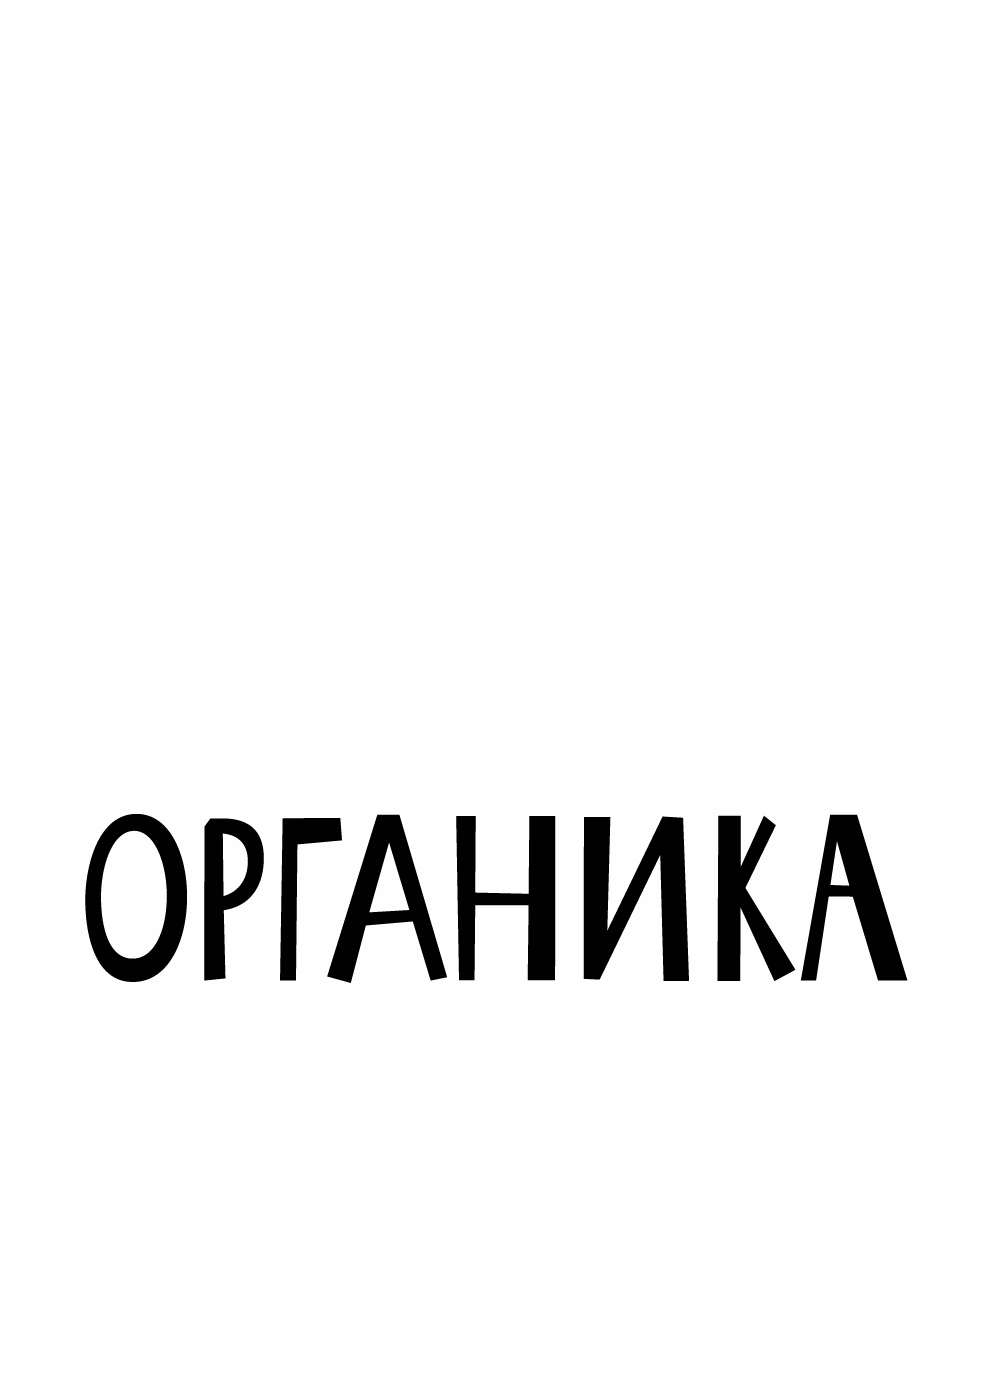 organika logo